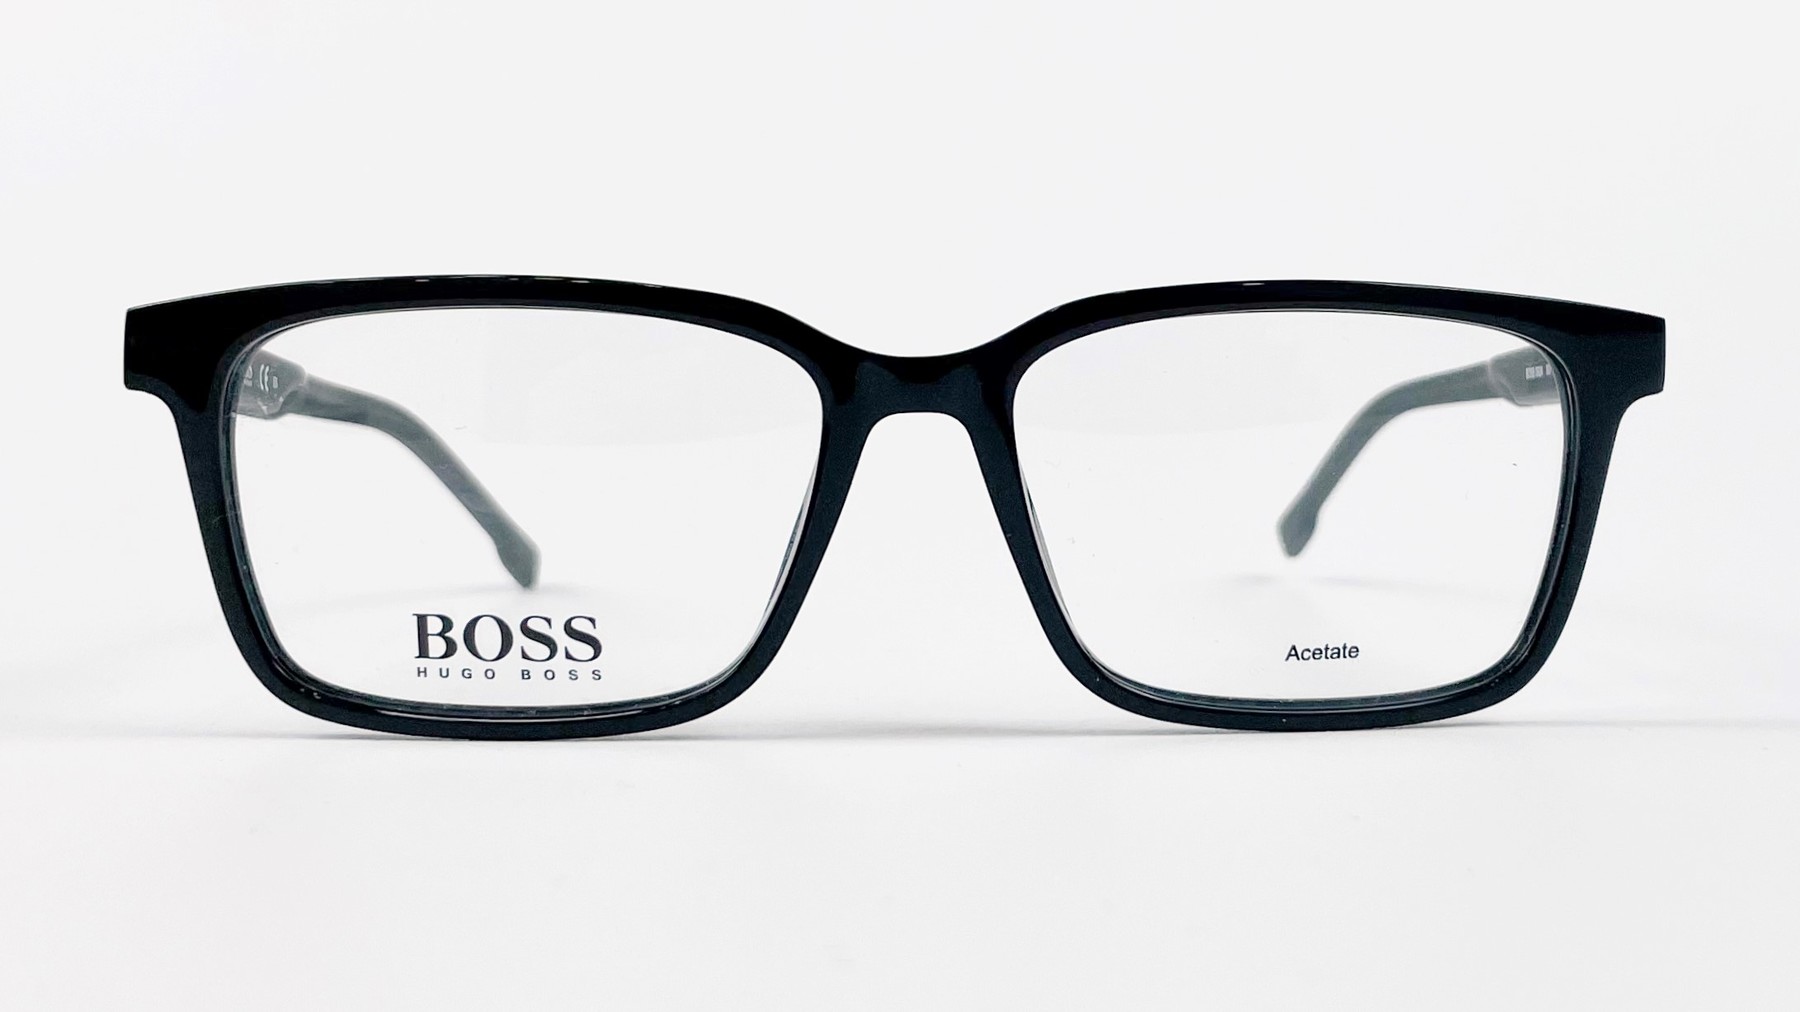 HUGO BOSS 0924 807, Korean glasses, sunglasses, eyeglasses, glasses